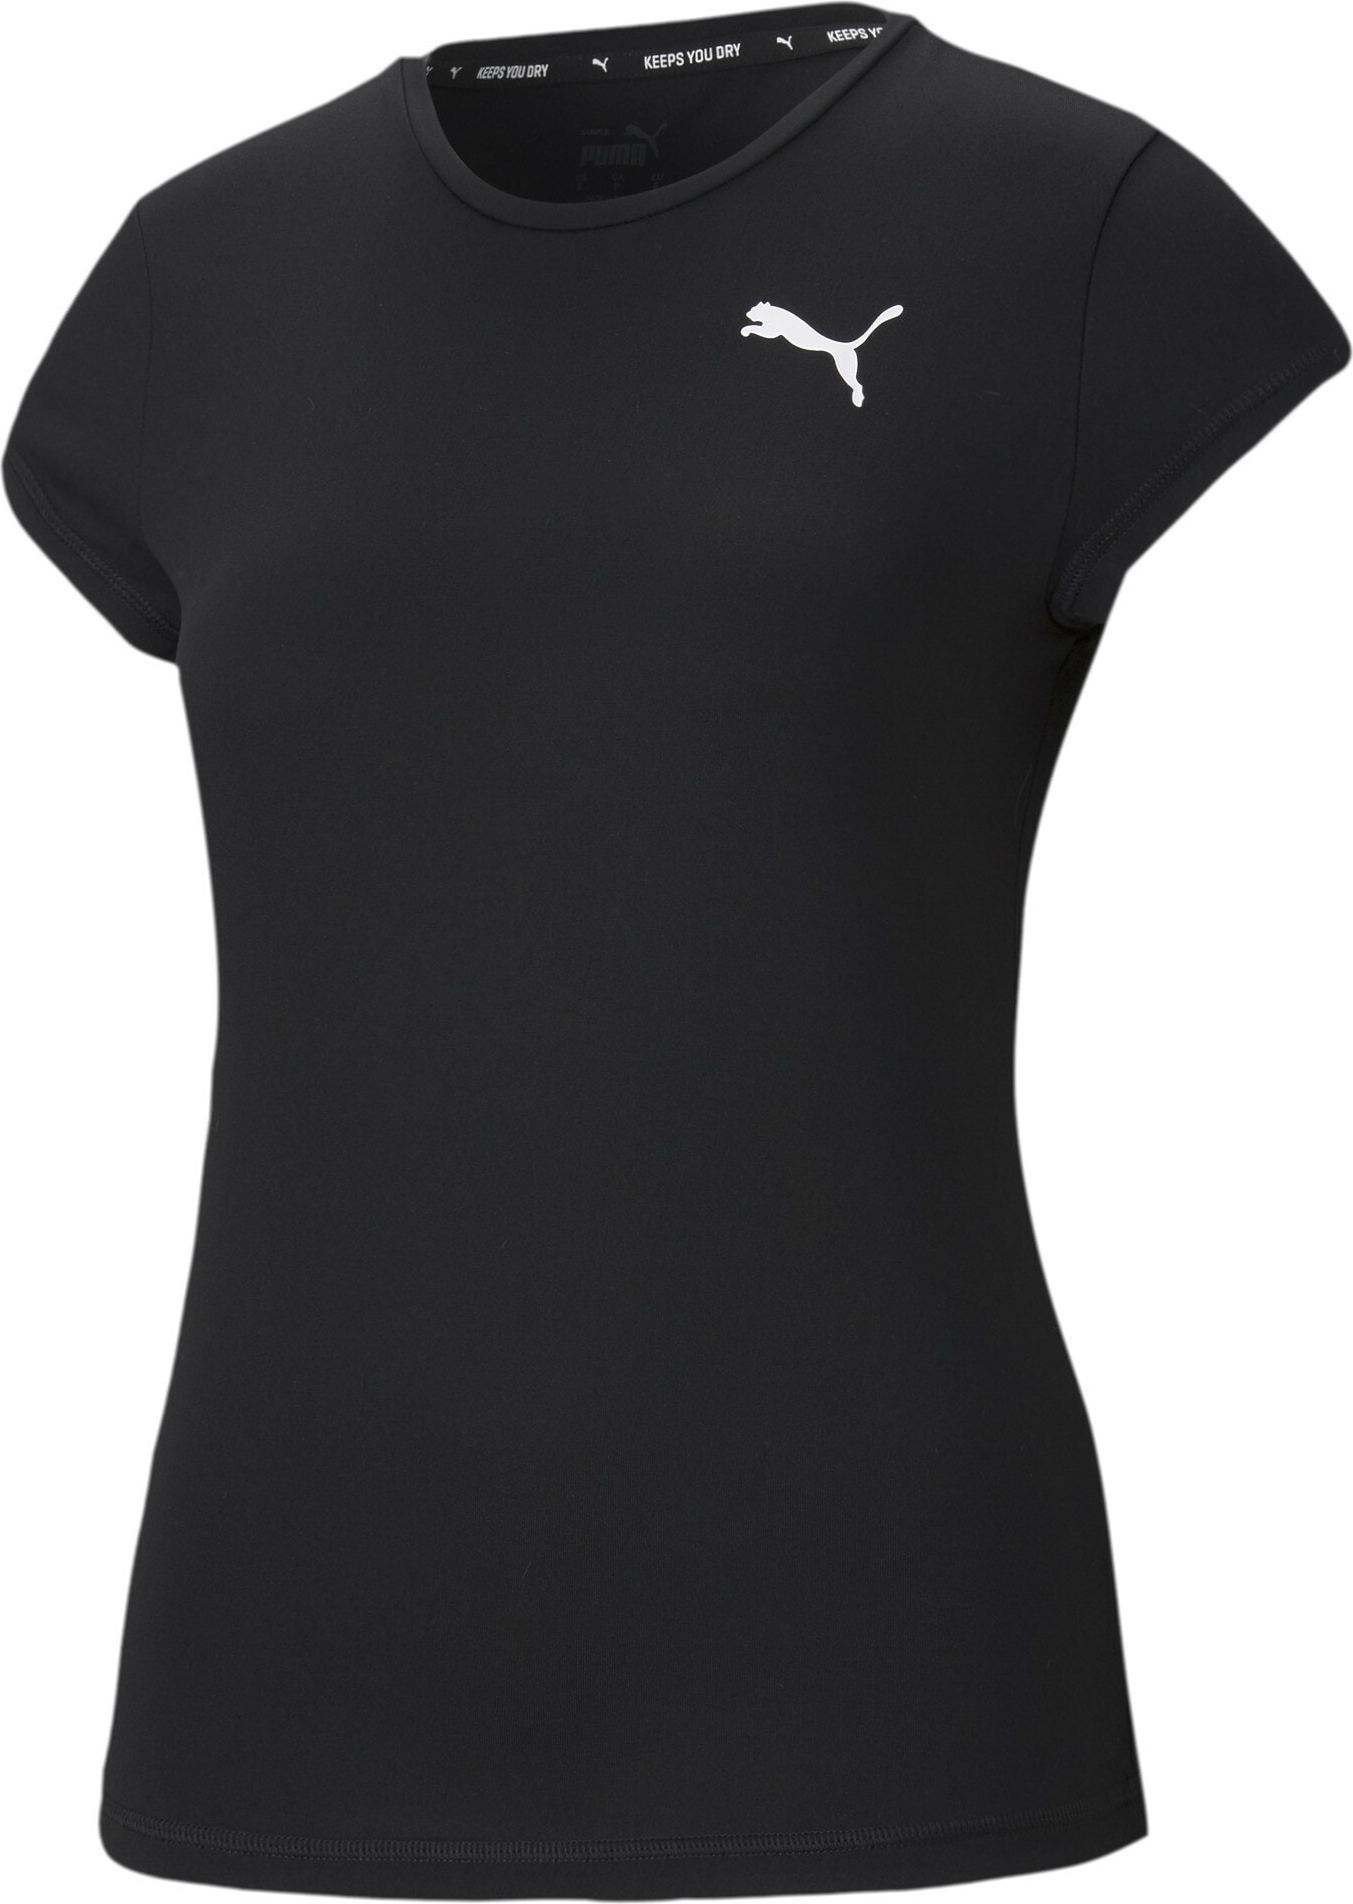 Funkční tričko Puma černá / bílá